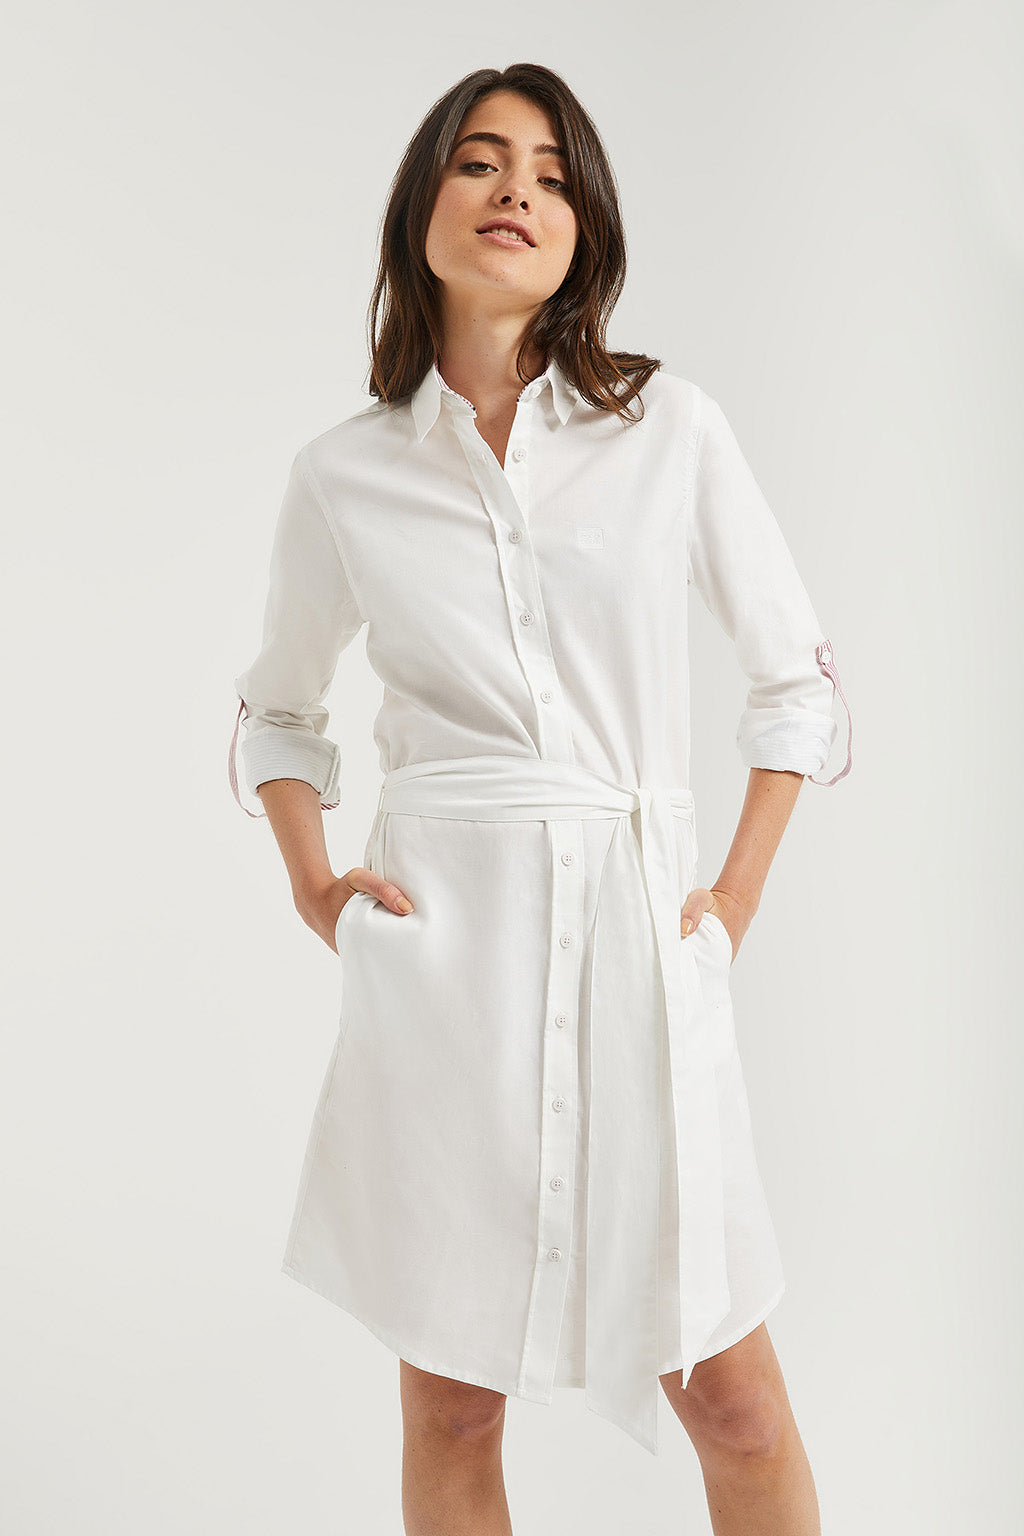 Vestido camisero blanco manga larga con detalle – Polo Club